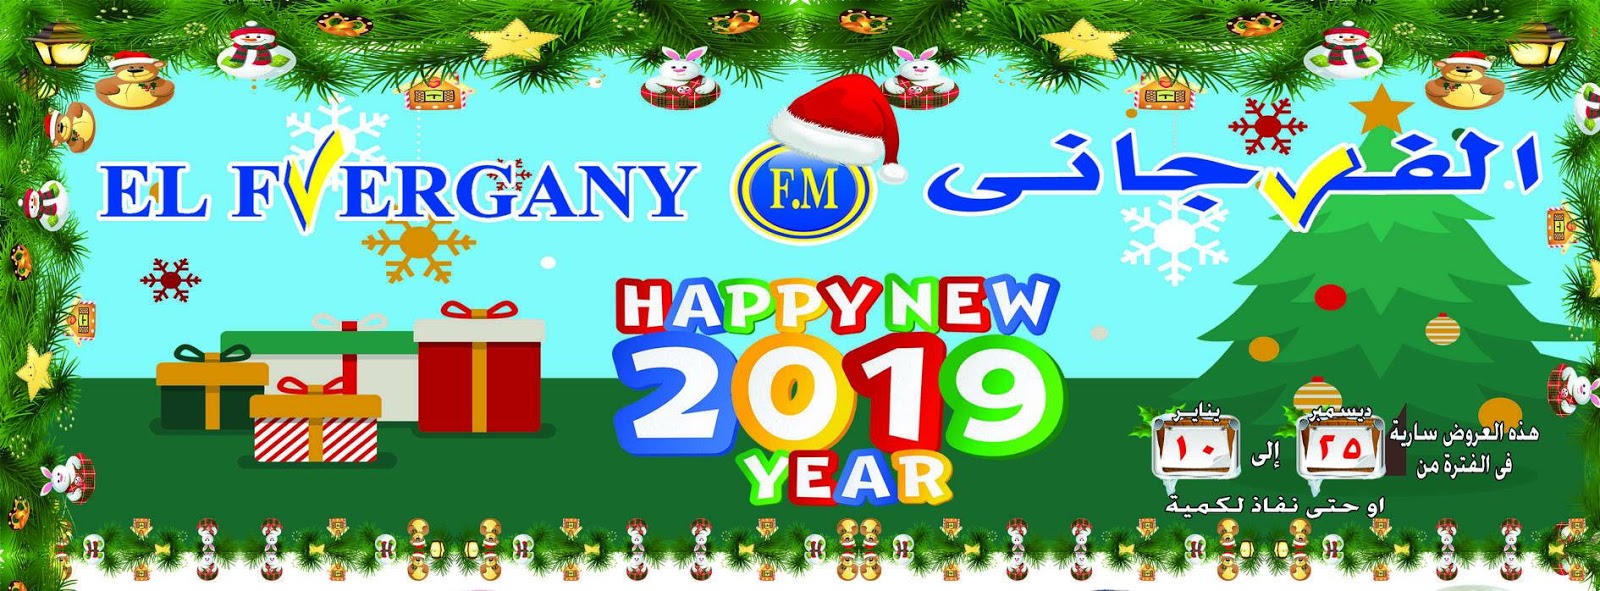 عروض الفرجانى من 25 ديسمبر 2018 حتى 10 يناير 2019 عروض الكريسماس